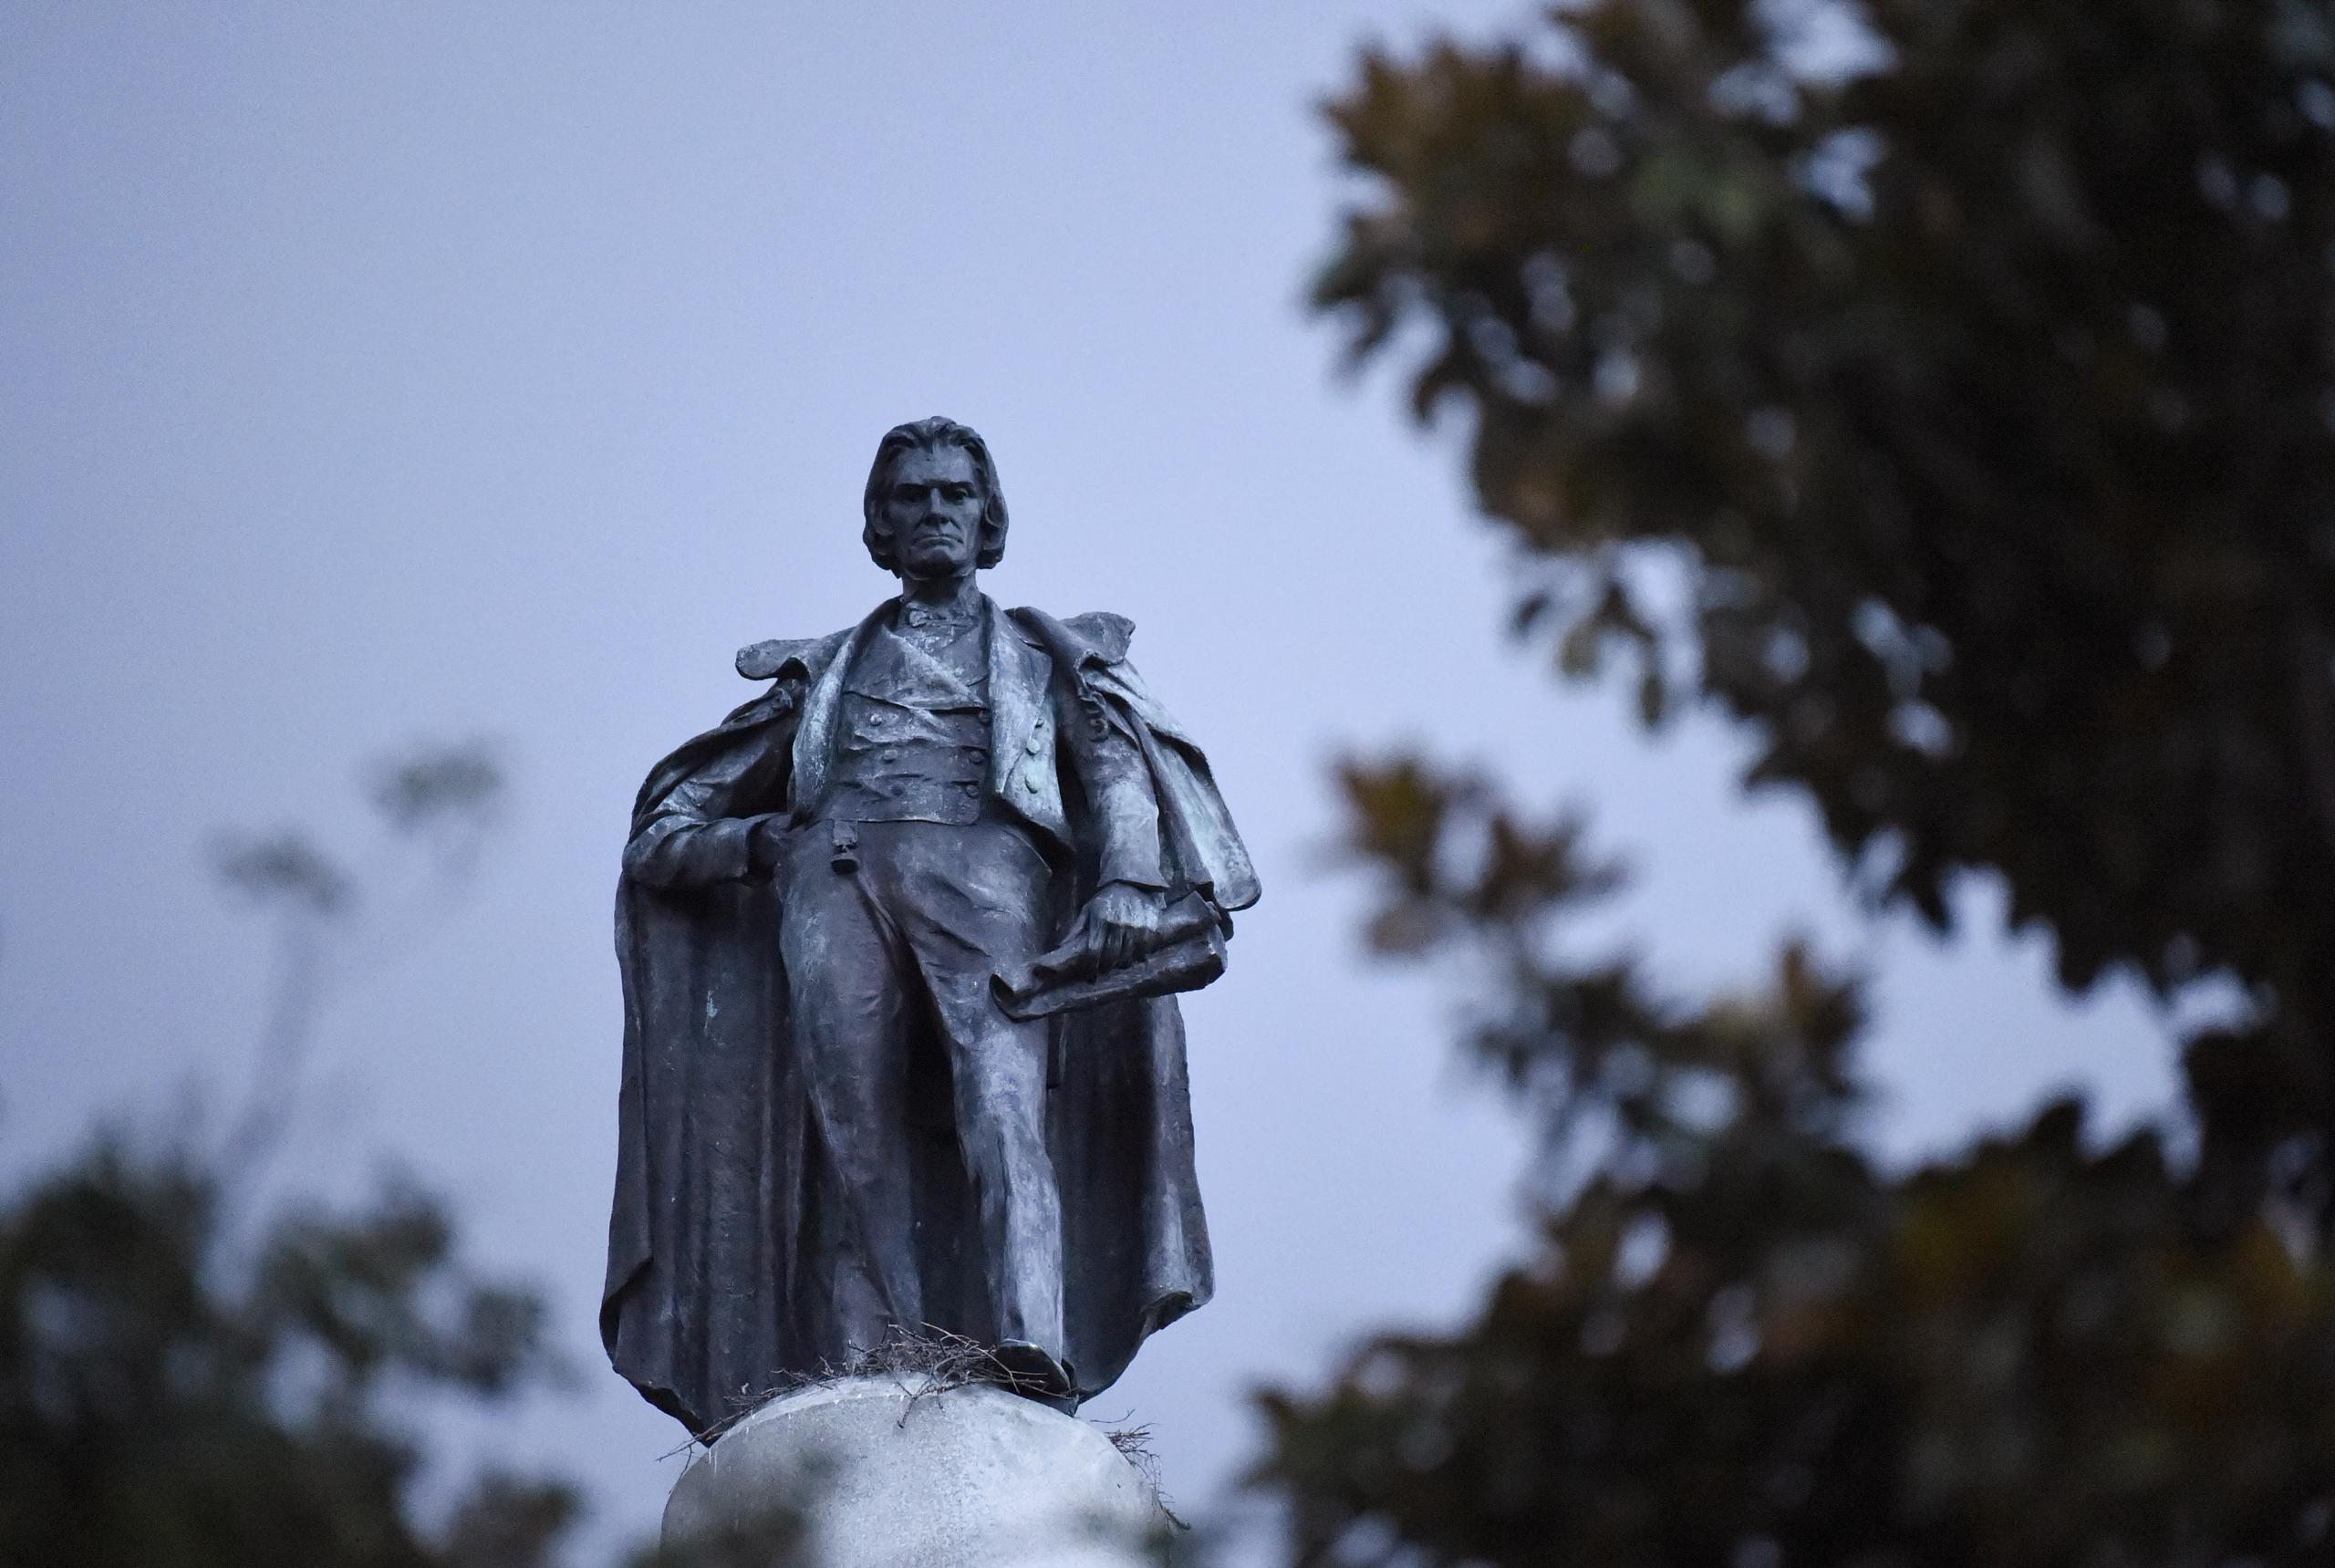 Monumento de 100 pies de altura en honor al vicepresidente y defensor de la esclavitud John C. Calhoun, situado en una plaza céntrica de Charleston, Carolina del Sur